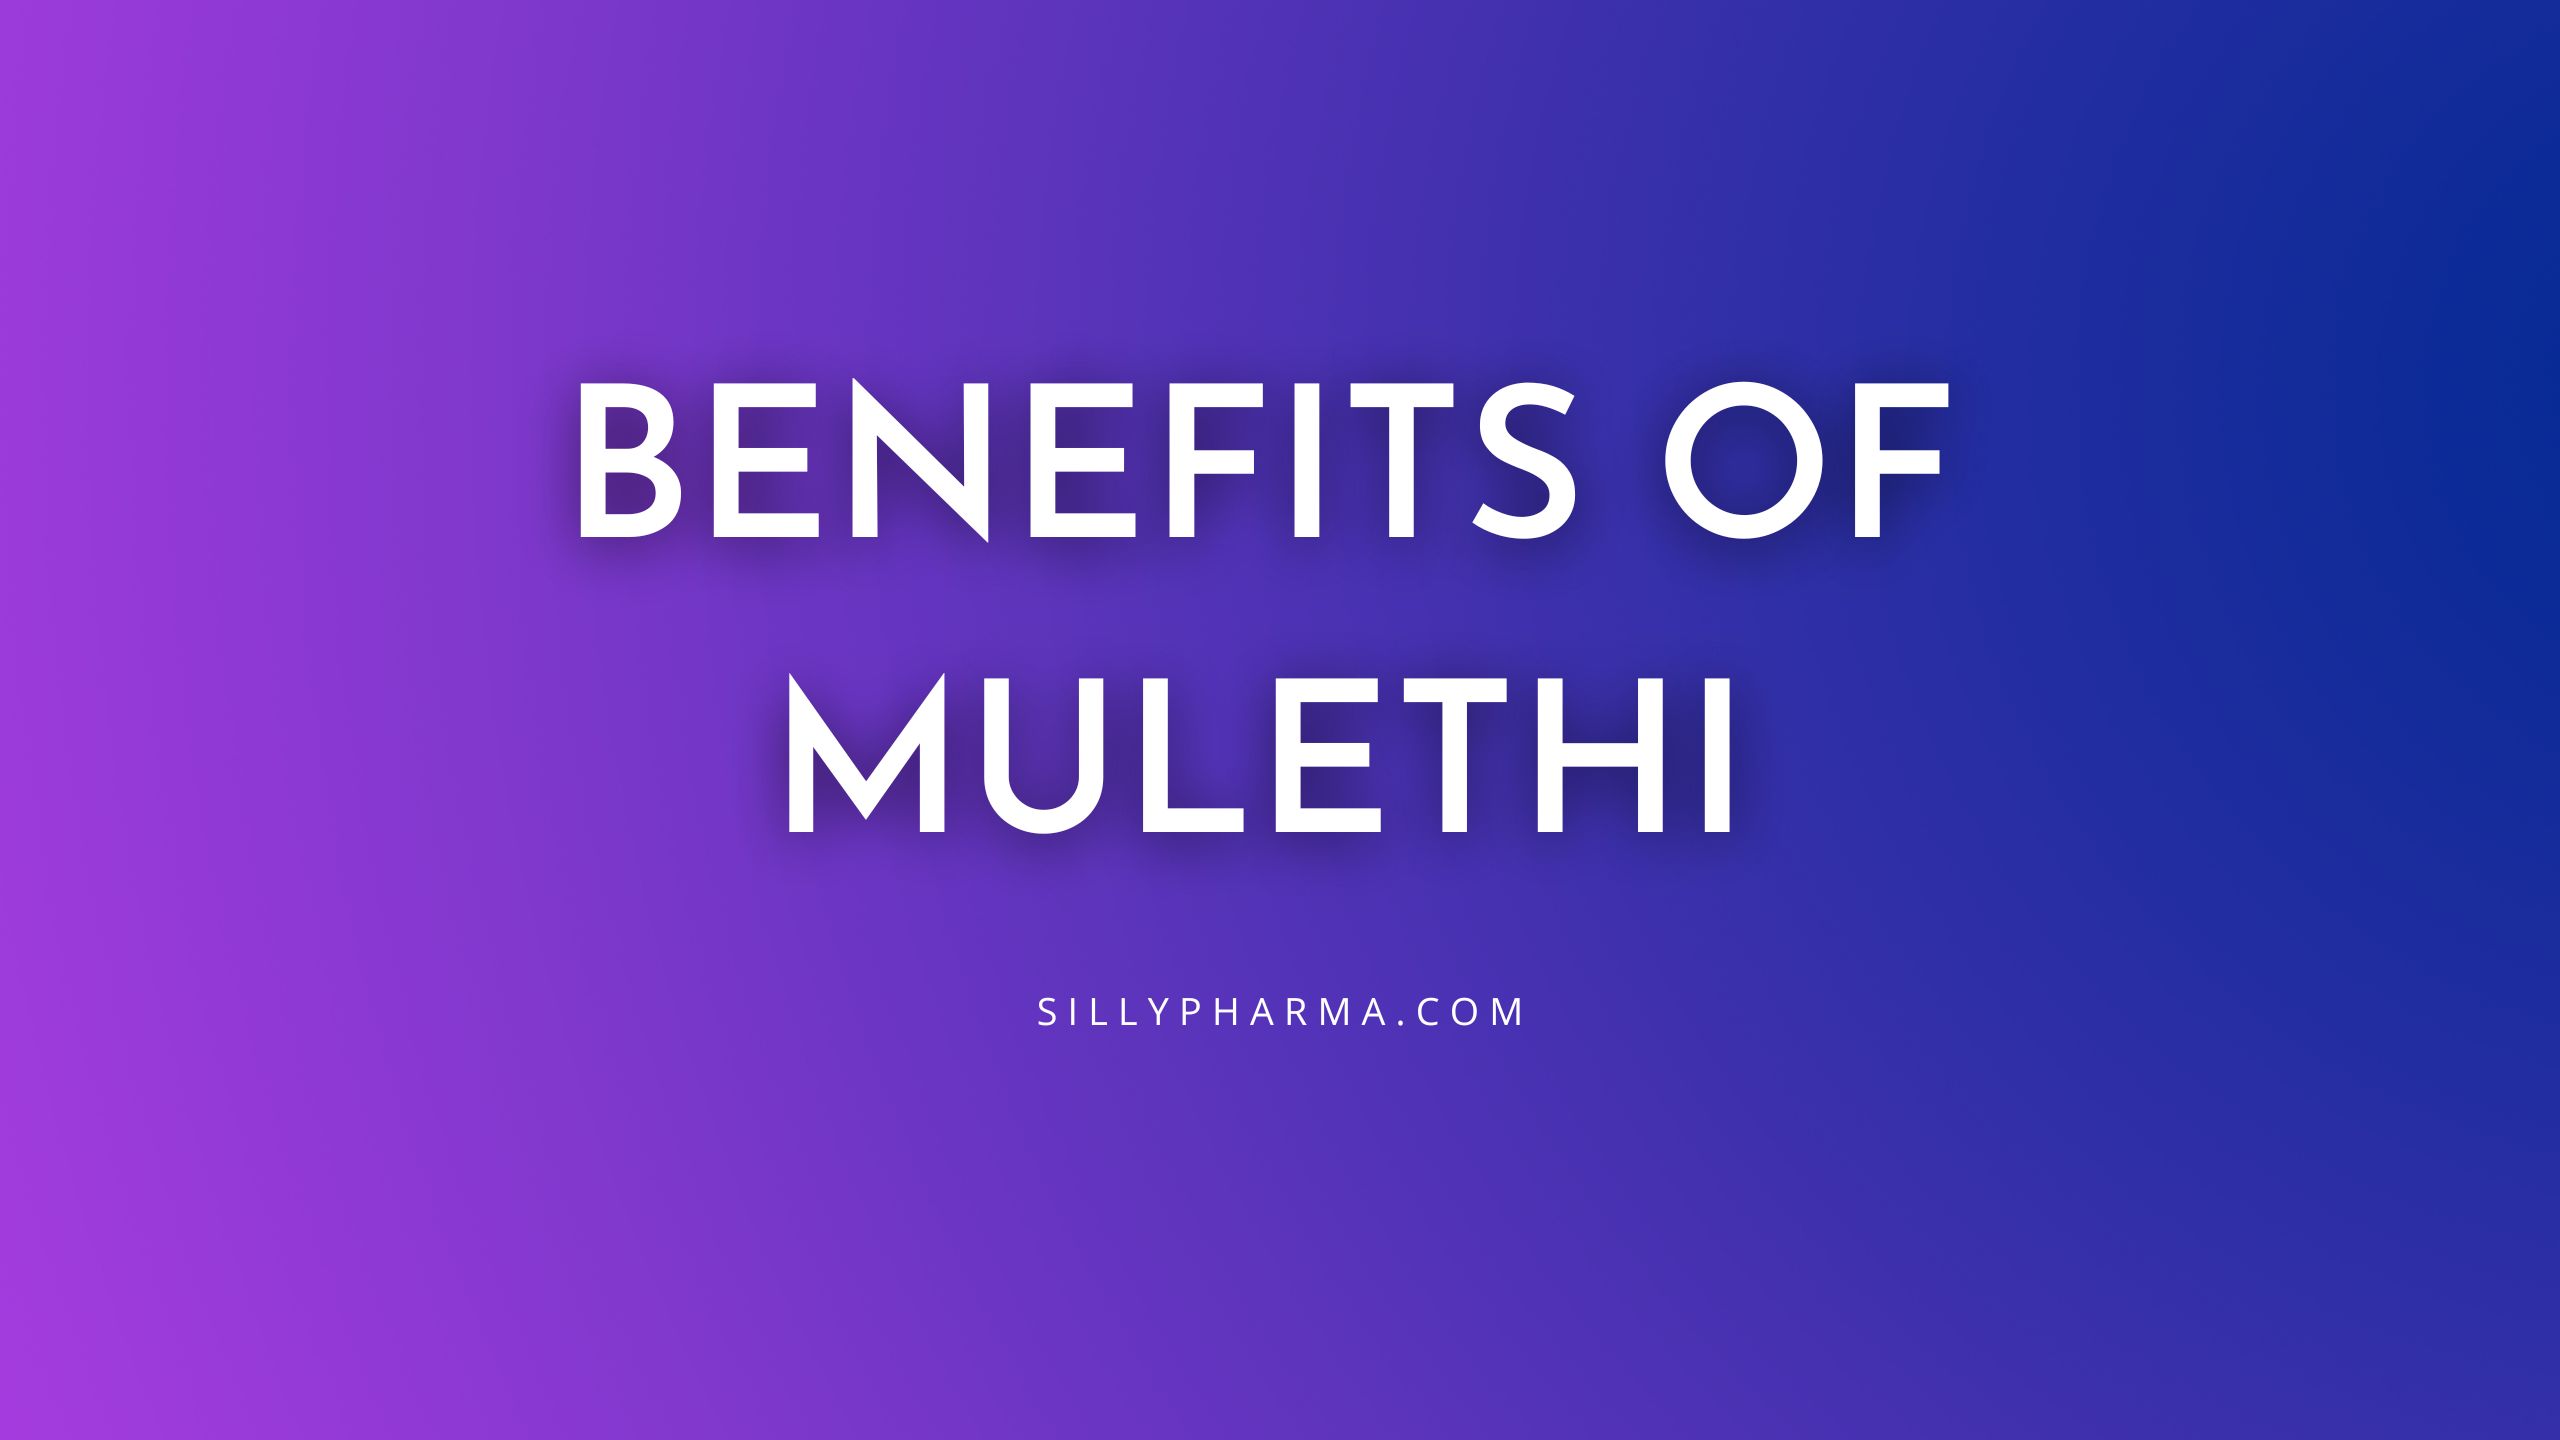 Benefits of Mulethi